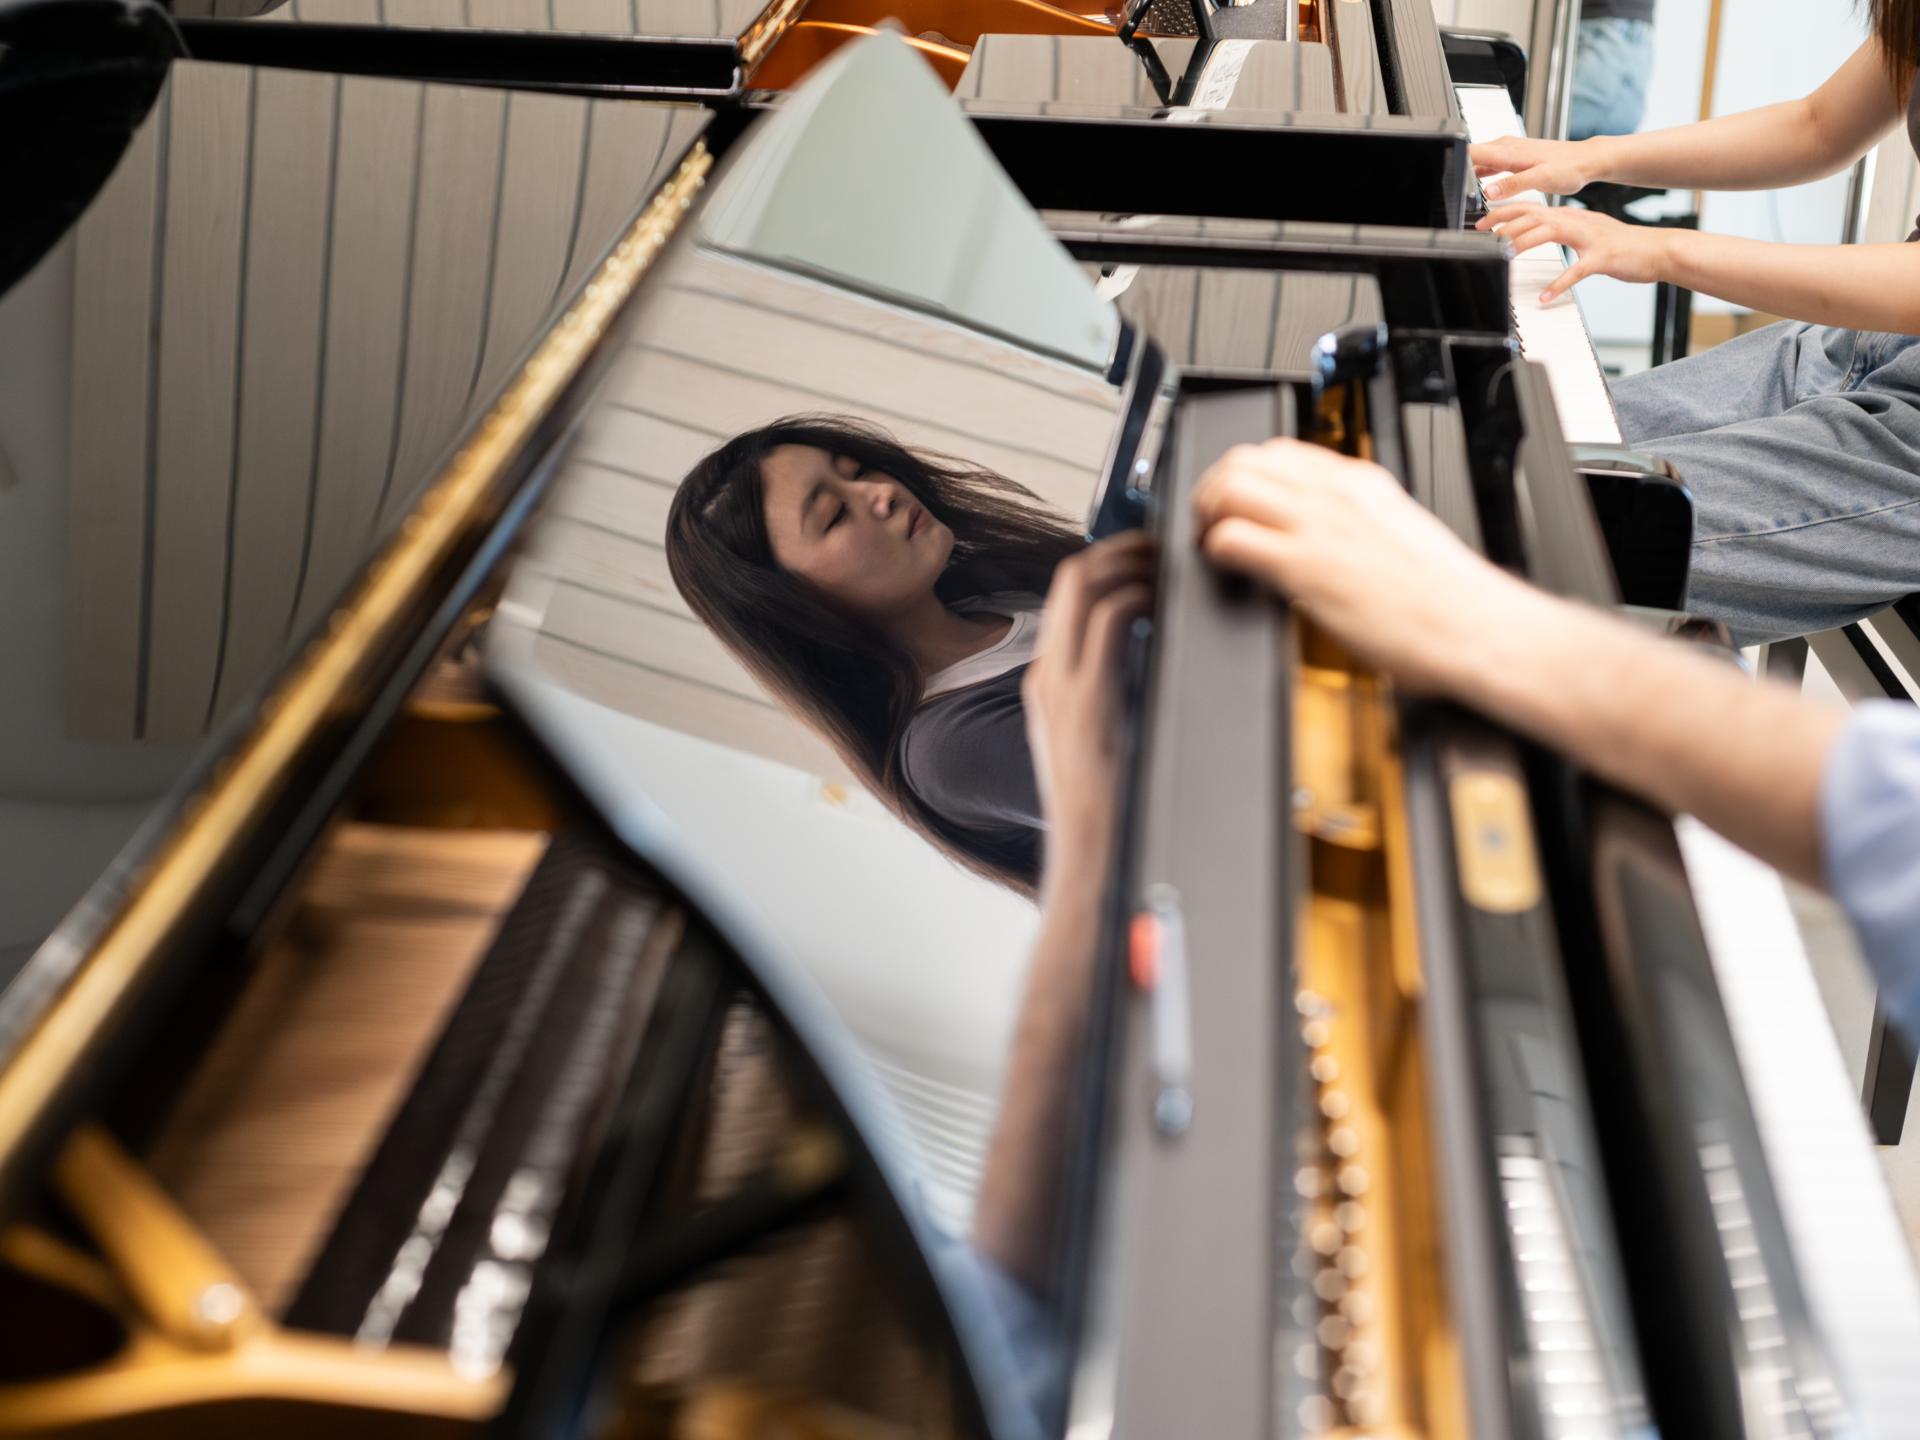 Klaviereinzelunterricht, Reflektion einer Studentin am Flügel.